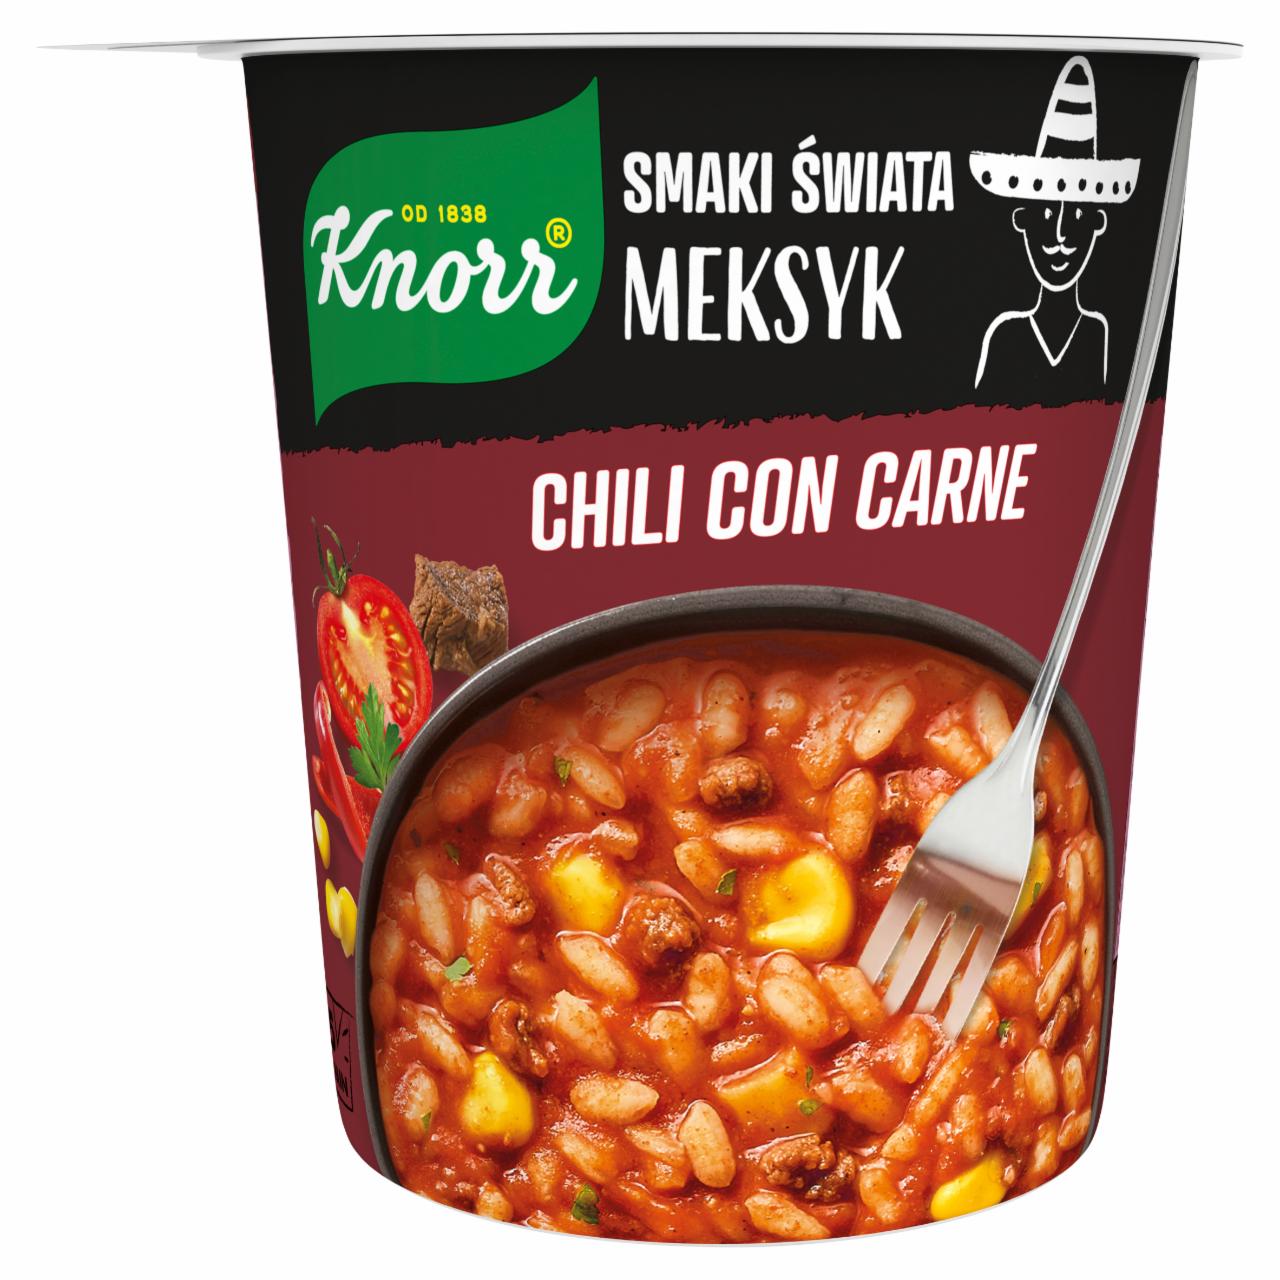 Zdjęcia - Knorr Smaki Świata Meksyk Chili con carne 57 g